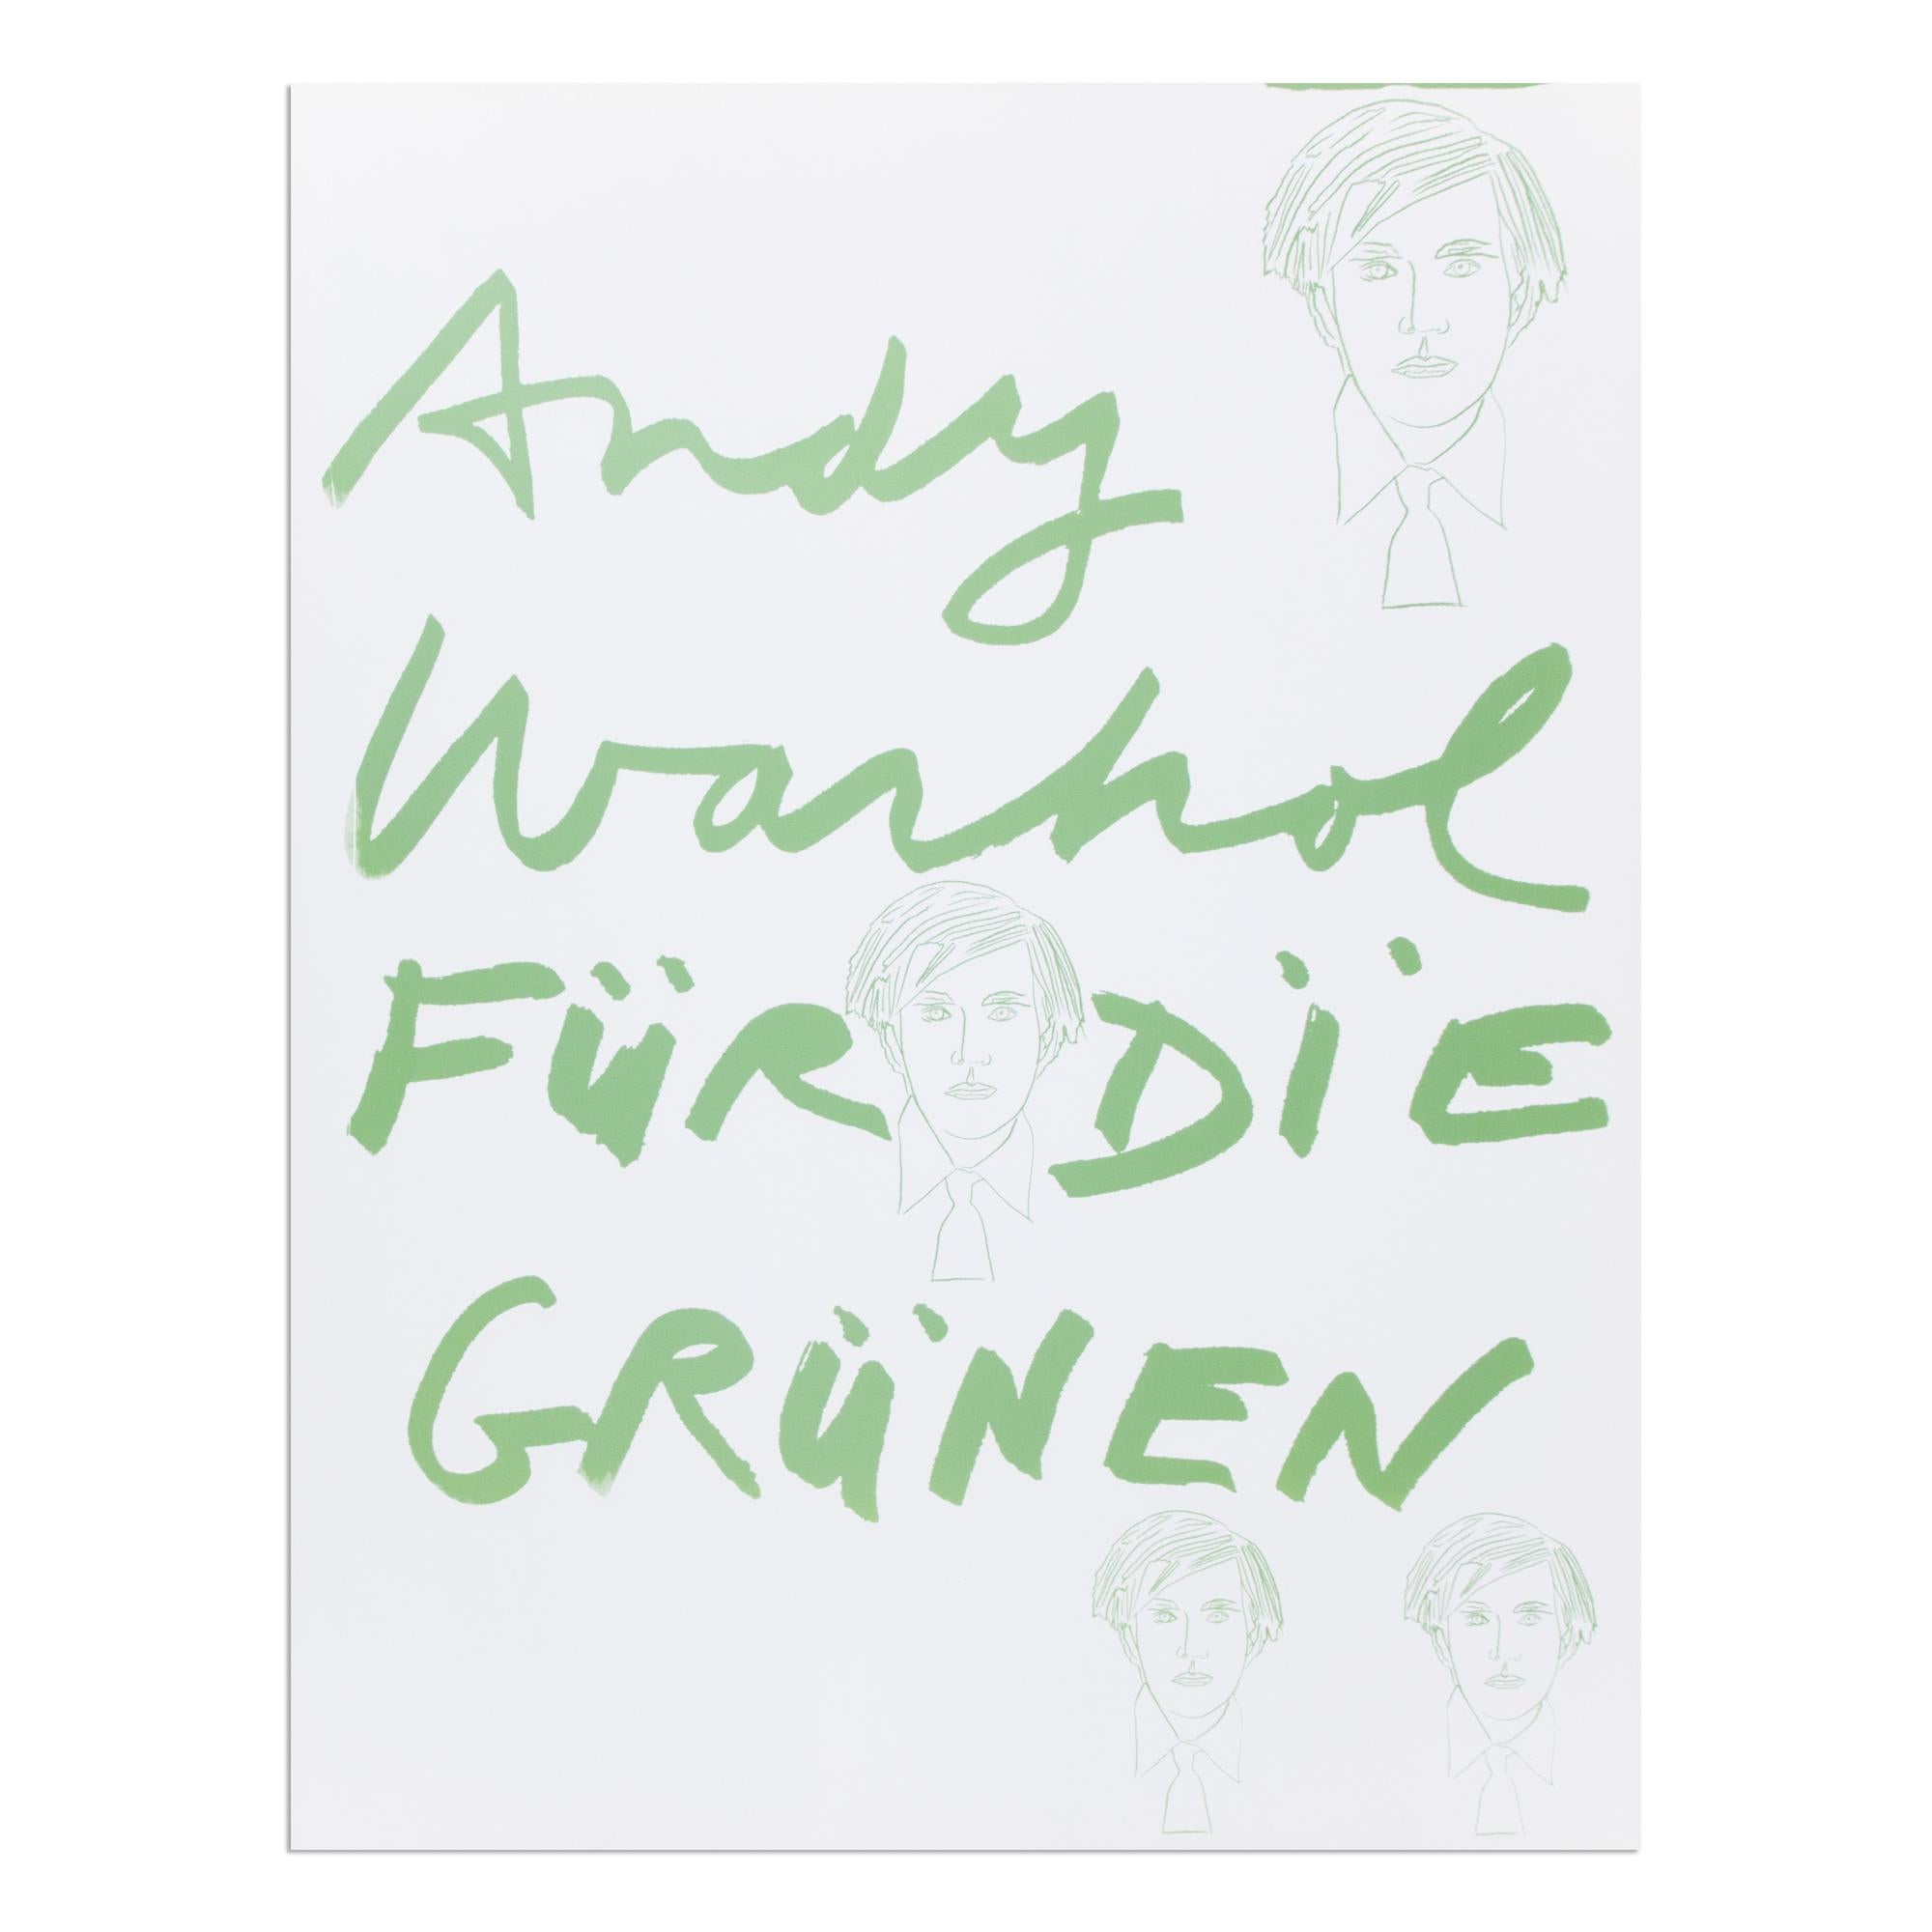 Andy Warhol (1928-1987)
Andy Warhol für die Grünen, 1980
Medium: Siebdruck auf Papier (Wahlplakat)
Abmessungen: 101 x 77 cm
Auflagenhöhe unbekannt: Nicht signiert, nicht nummeriert
Herausgeber: F.I.U. Freie Internationale Universität, Düsseldorf